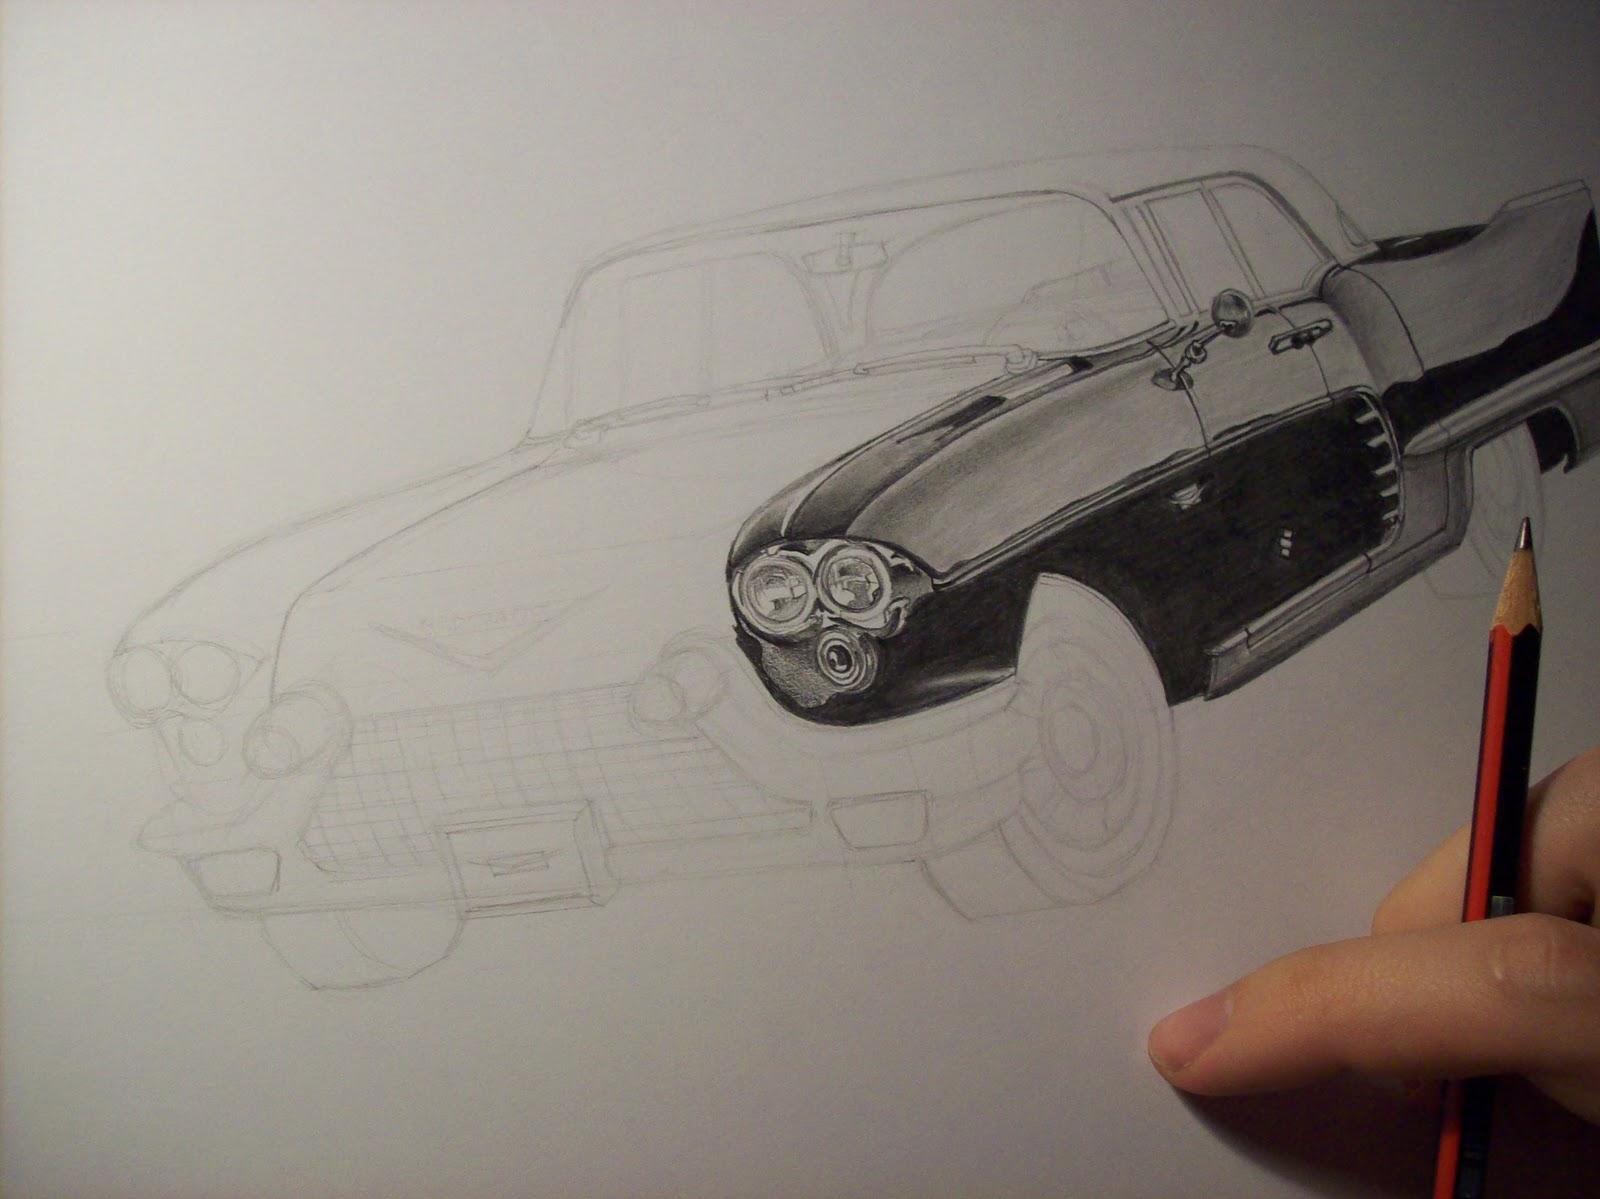 Dibujo a lápiz de auto terminado /Pencil drawing of car finished - Paperblog